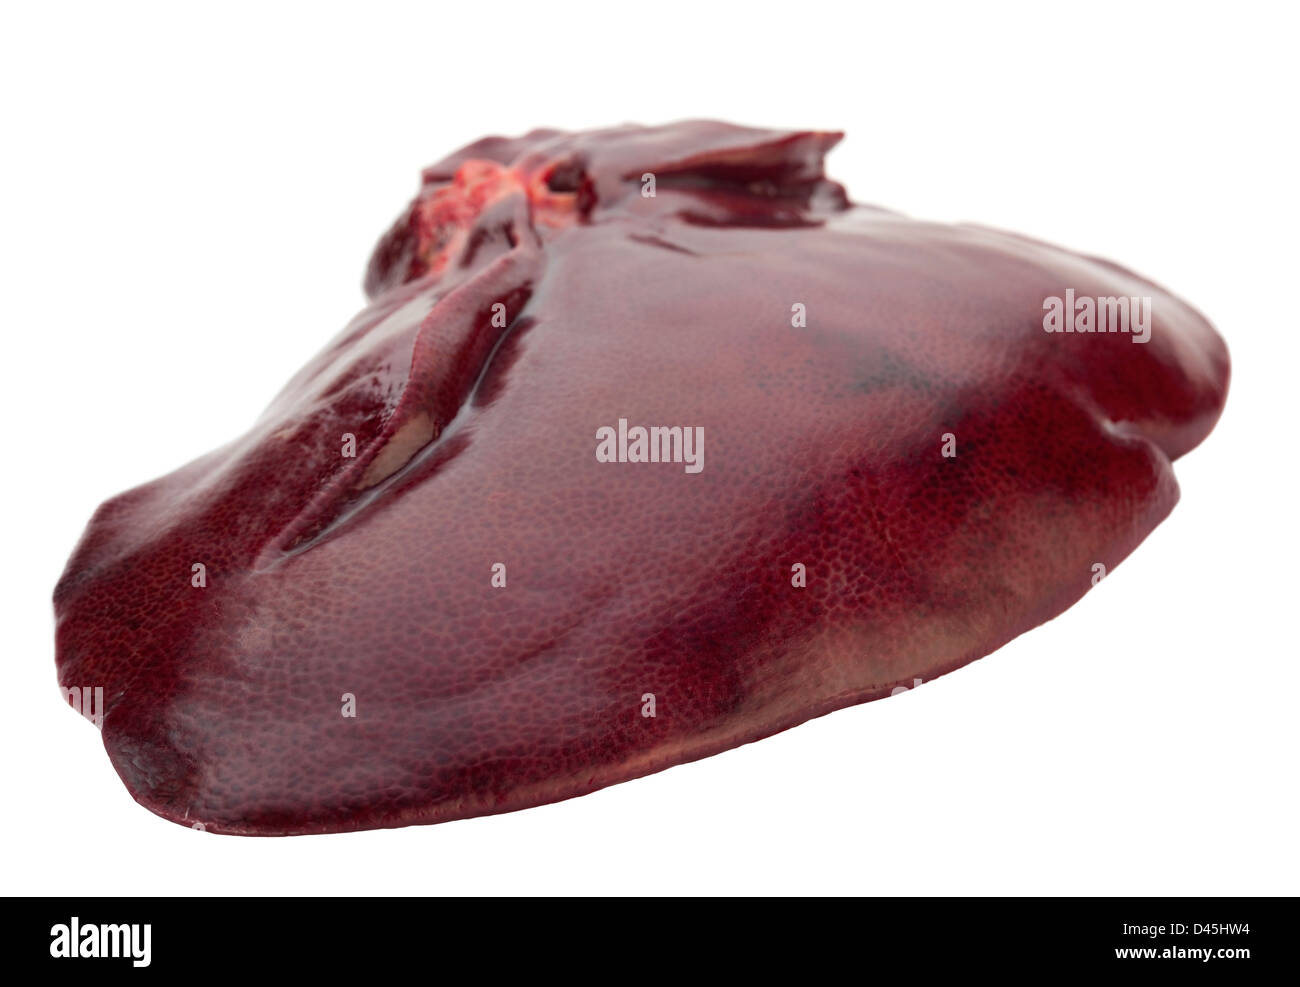 Hígado de cerdo cruda aislado en blanco Foto de stock